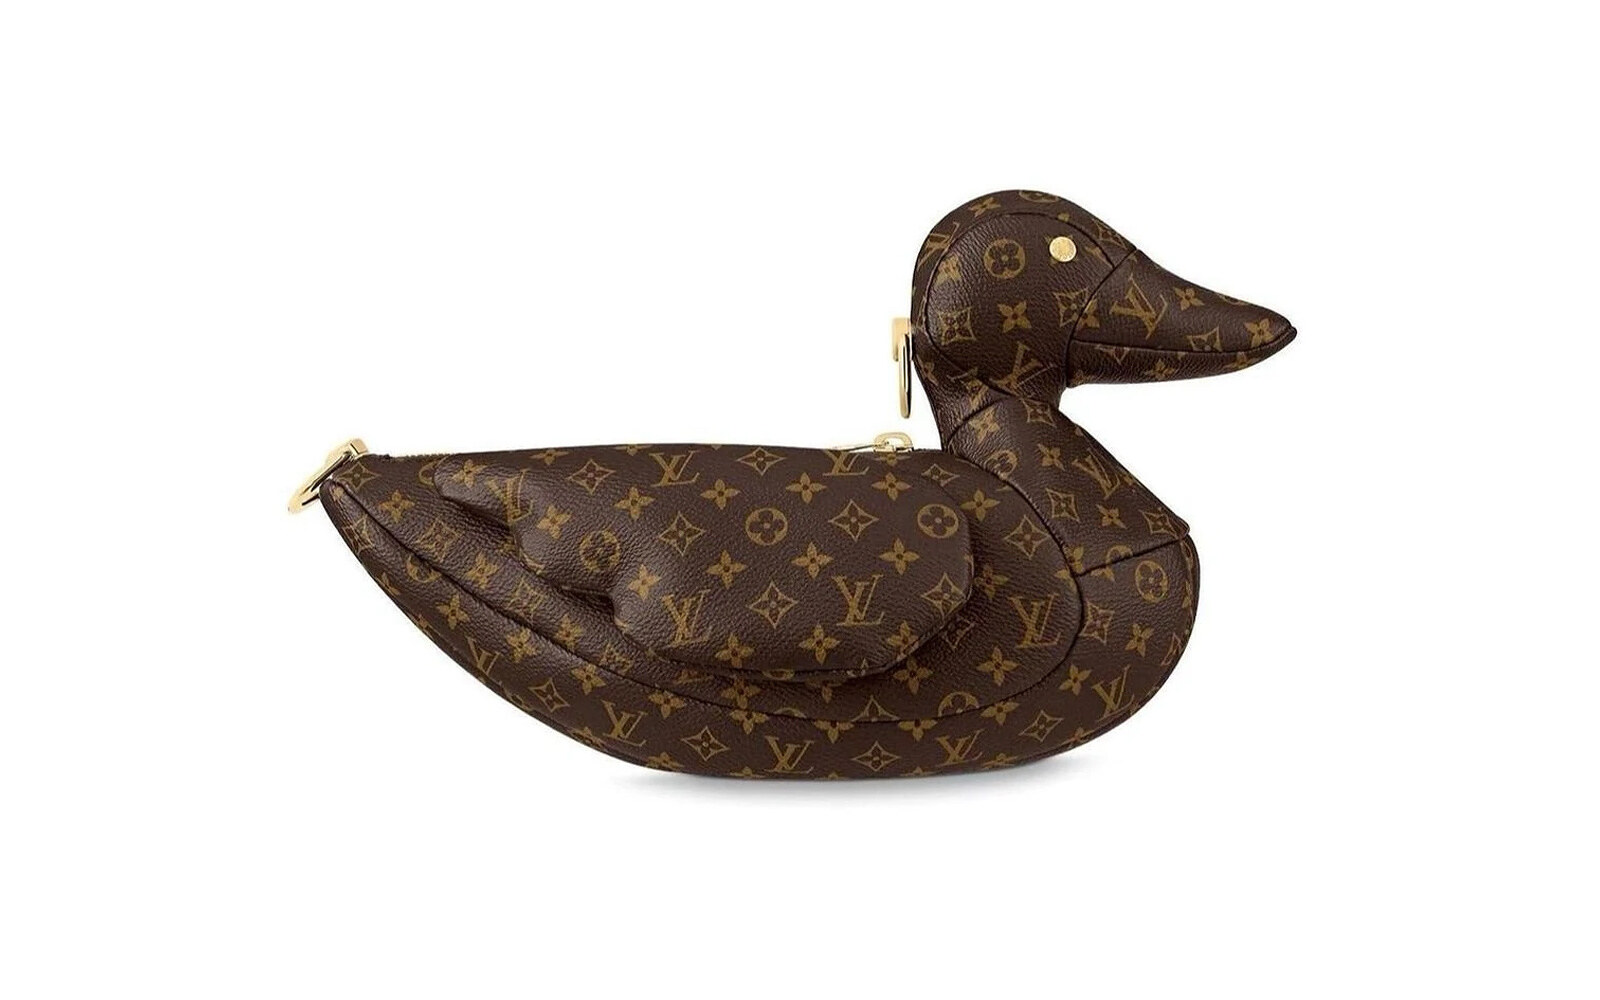 Louis Vuitton x Nigo Duck Bag